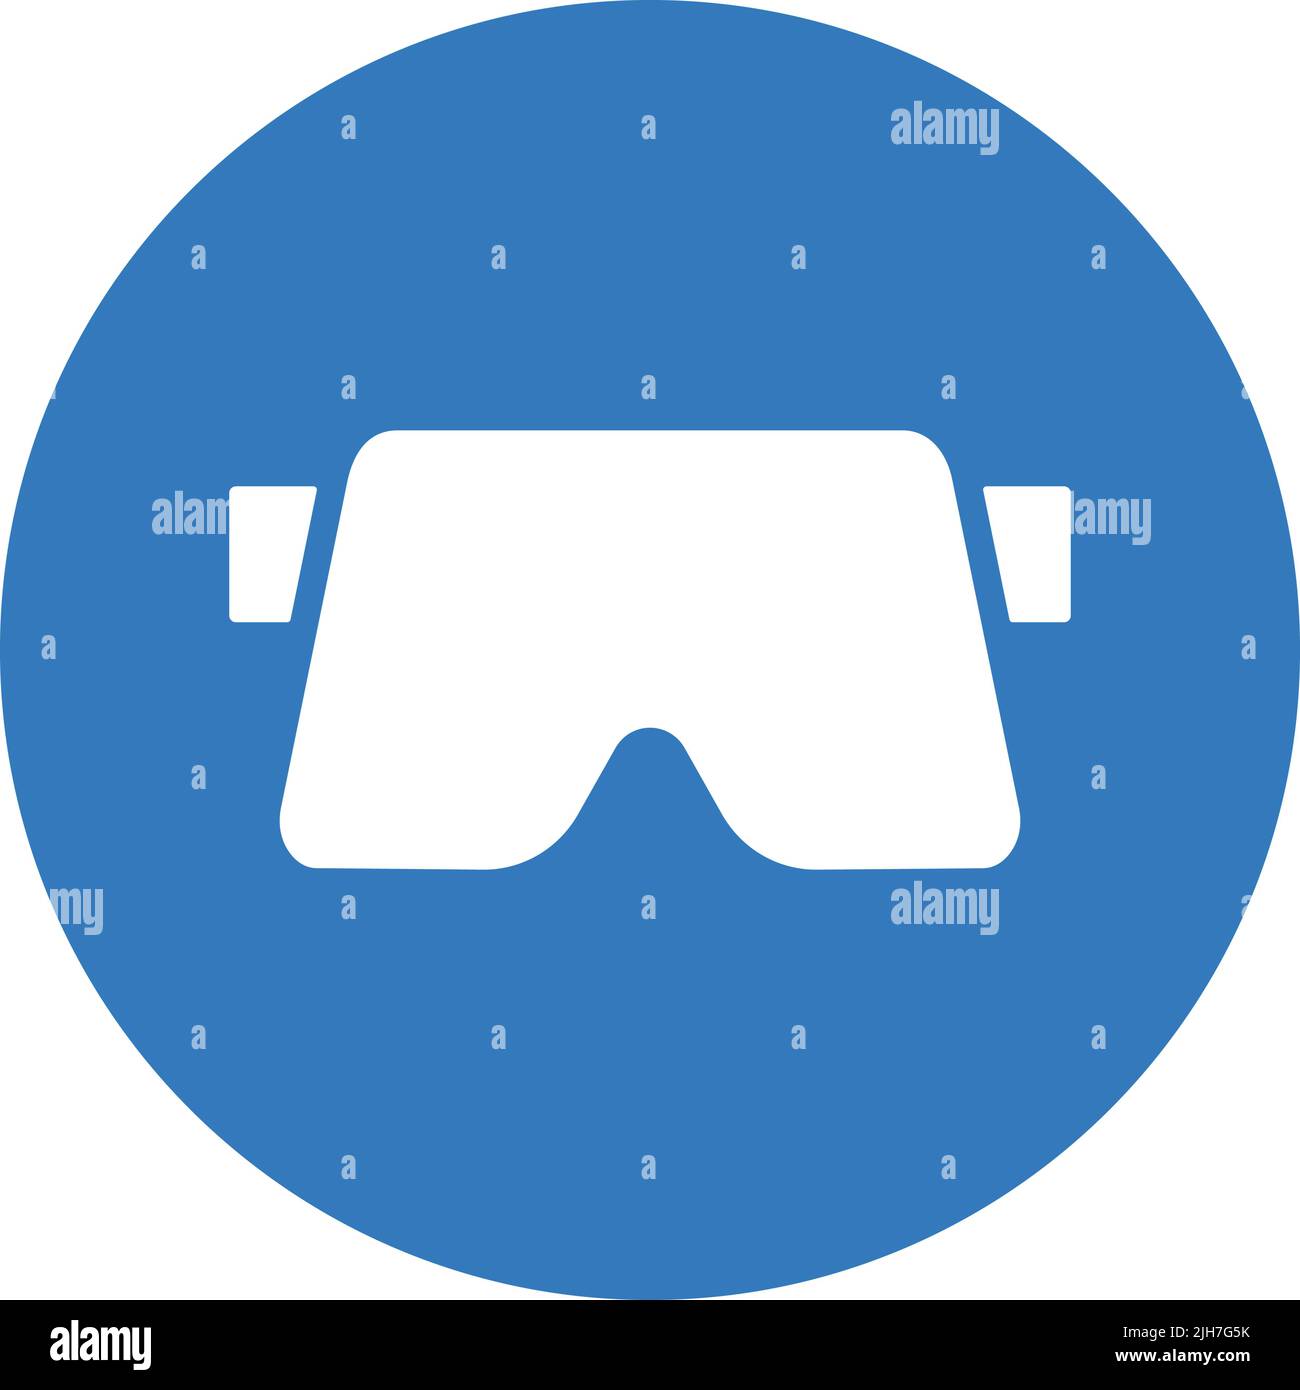 L'icona di realtà virtuale, virtuale, di goggle, rift è isolata su sfondo bianco. Utilizzo per grafica e web design o scopi commerciali. File EPS vettoriale. Illustrazione Vettoriale